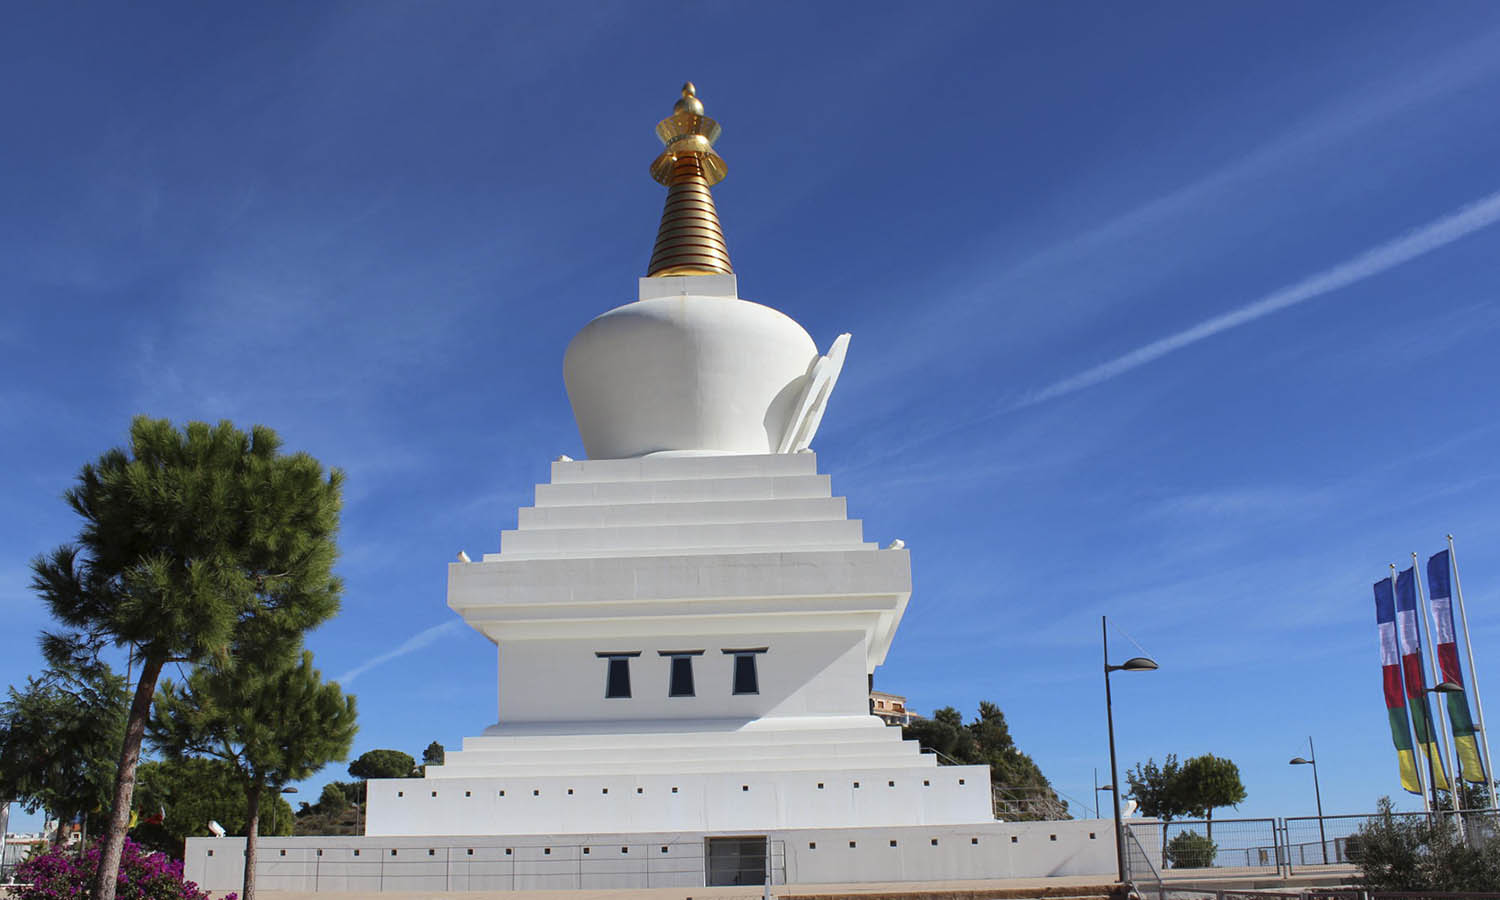 Templo Budista - Hay muchos lugares de interés por visitar cerca del hotel